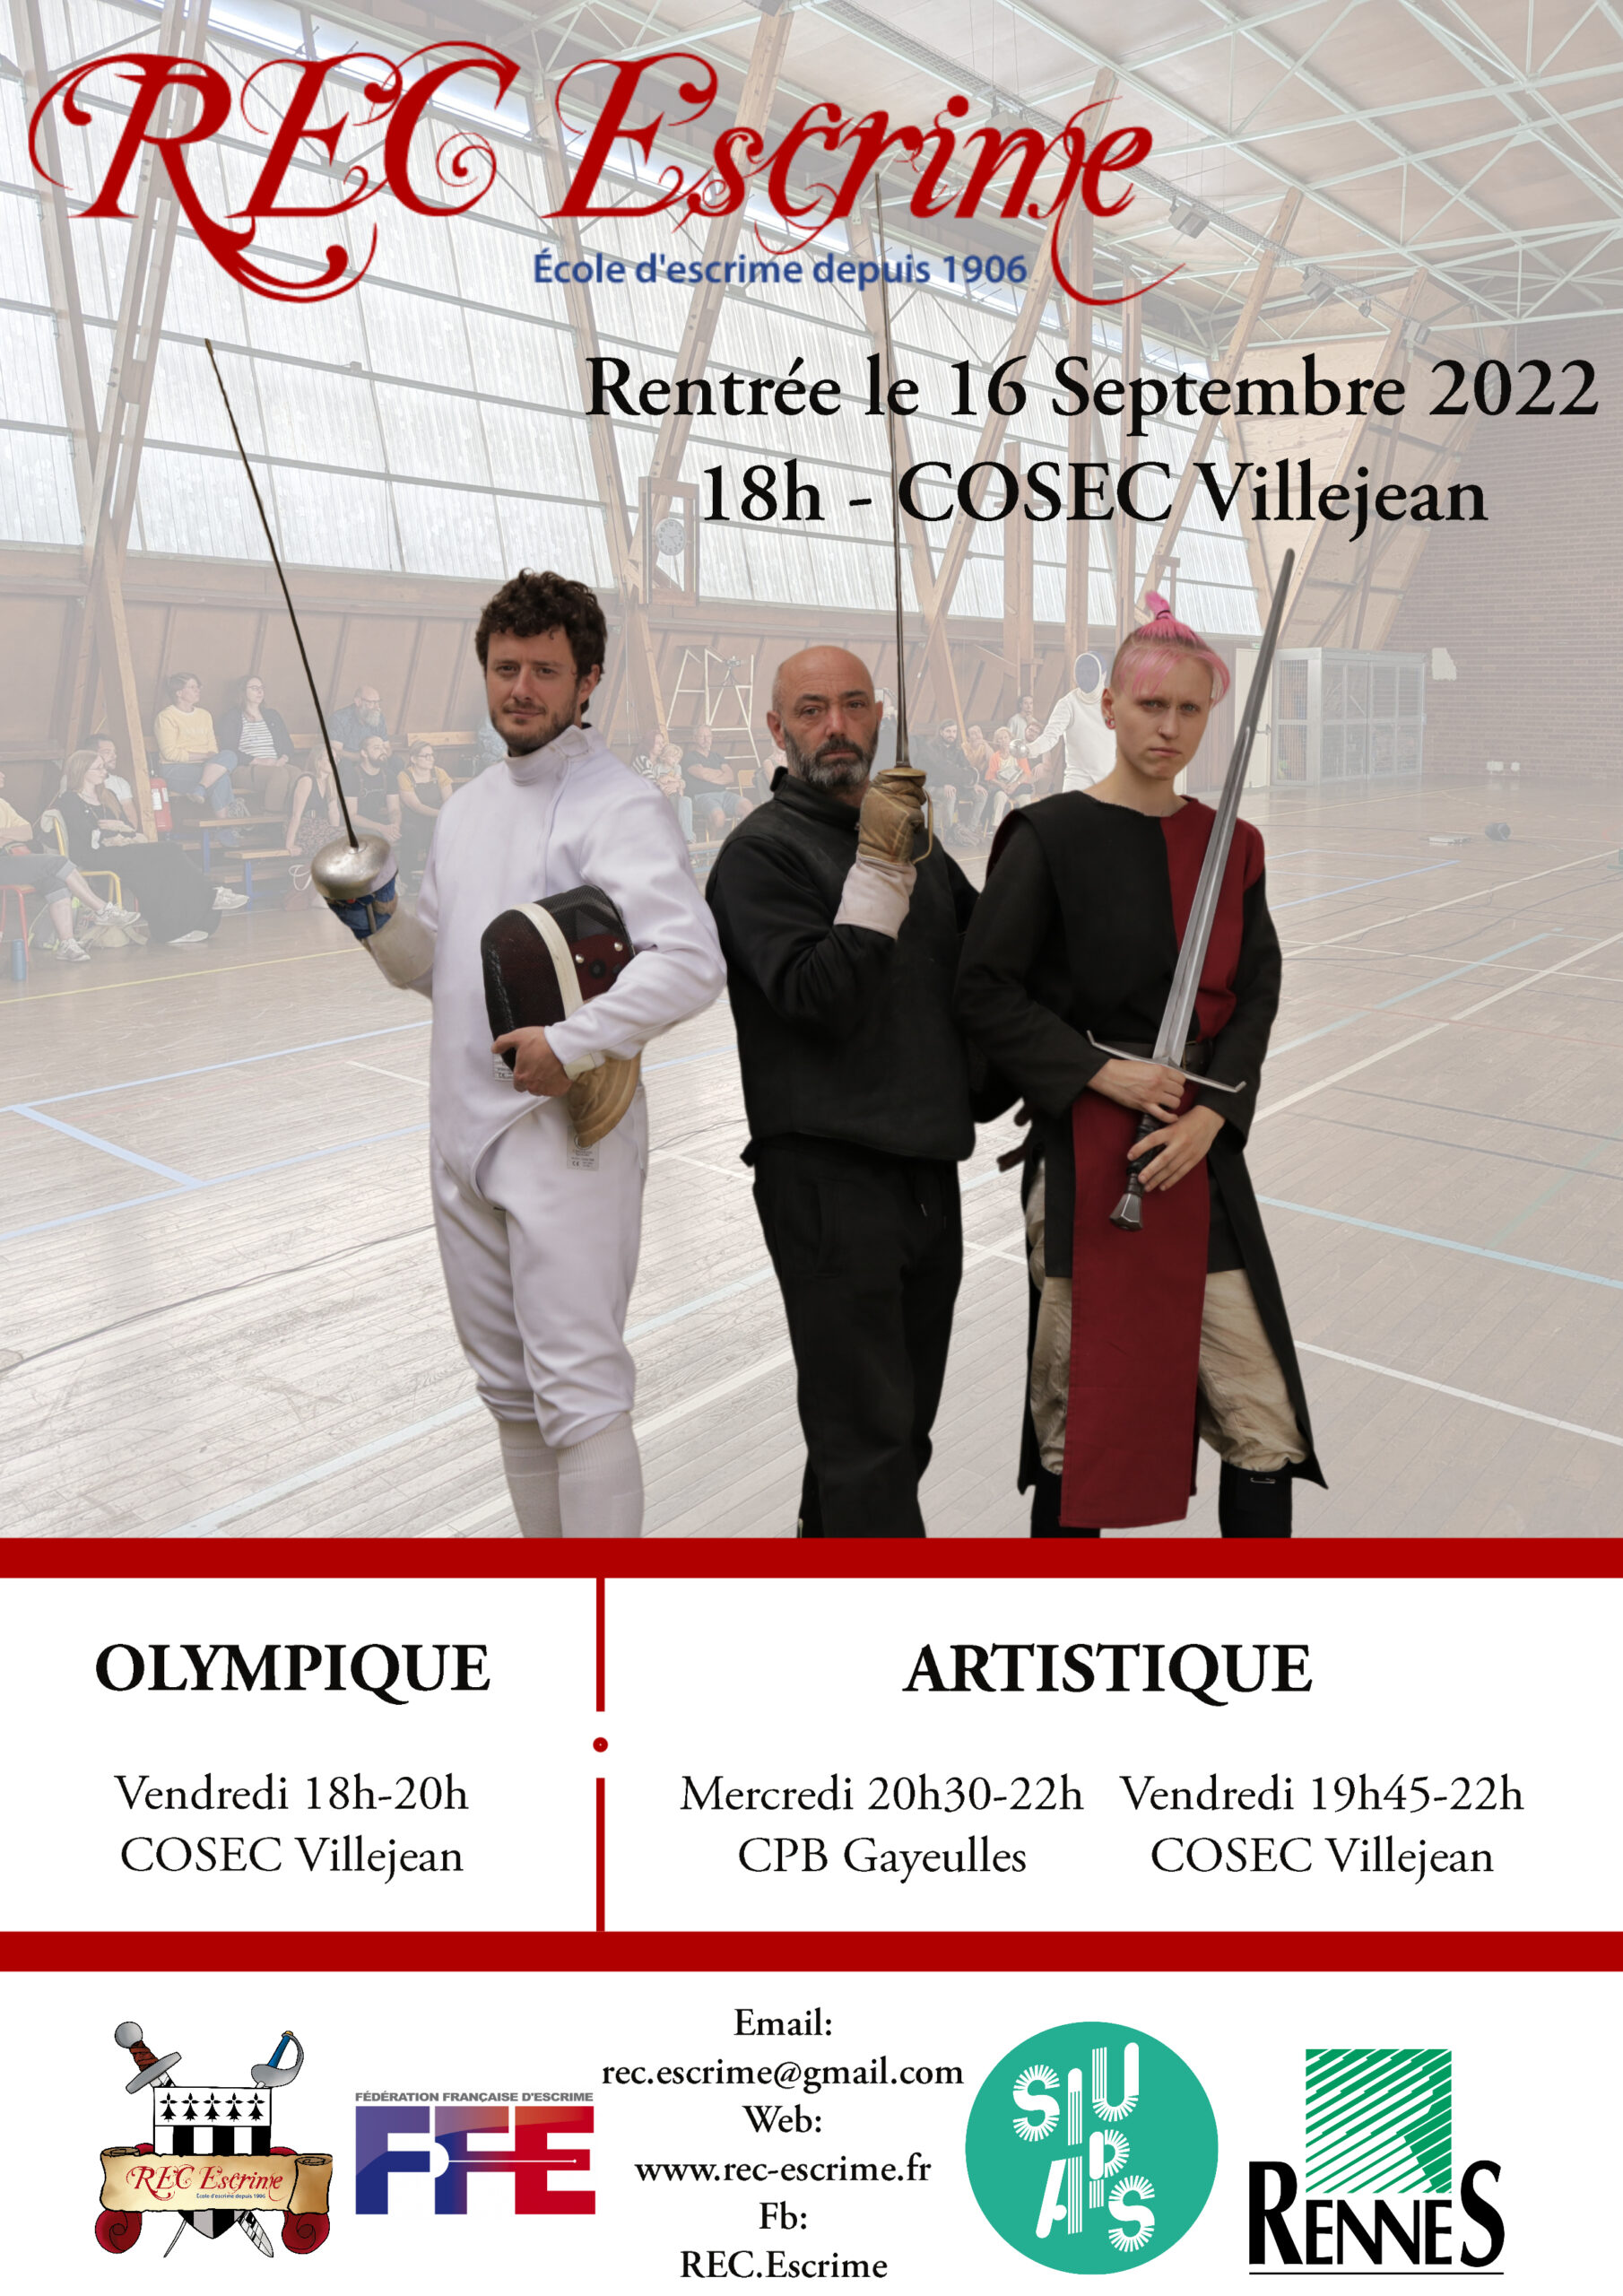 Affiche de la rentrée du REC, le 16 septembre 2022 au COSEC de Villejean, 18h-20h l'Olympique, 19h45-22h l'artistique.